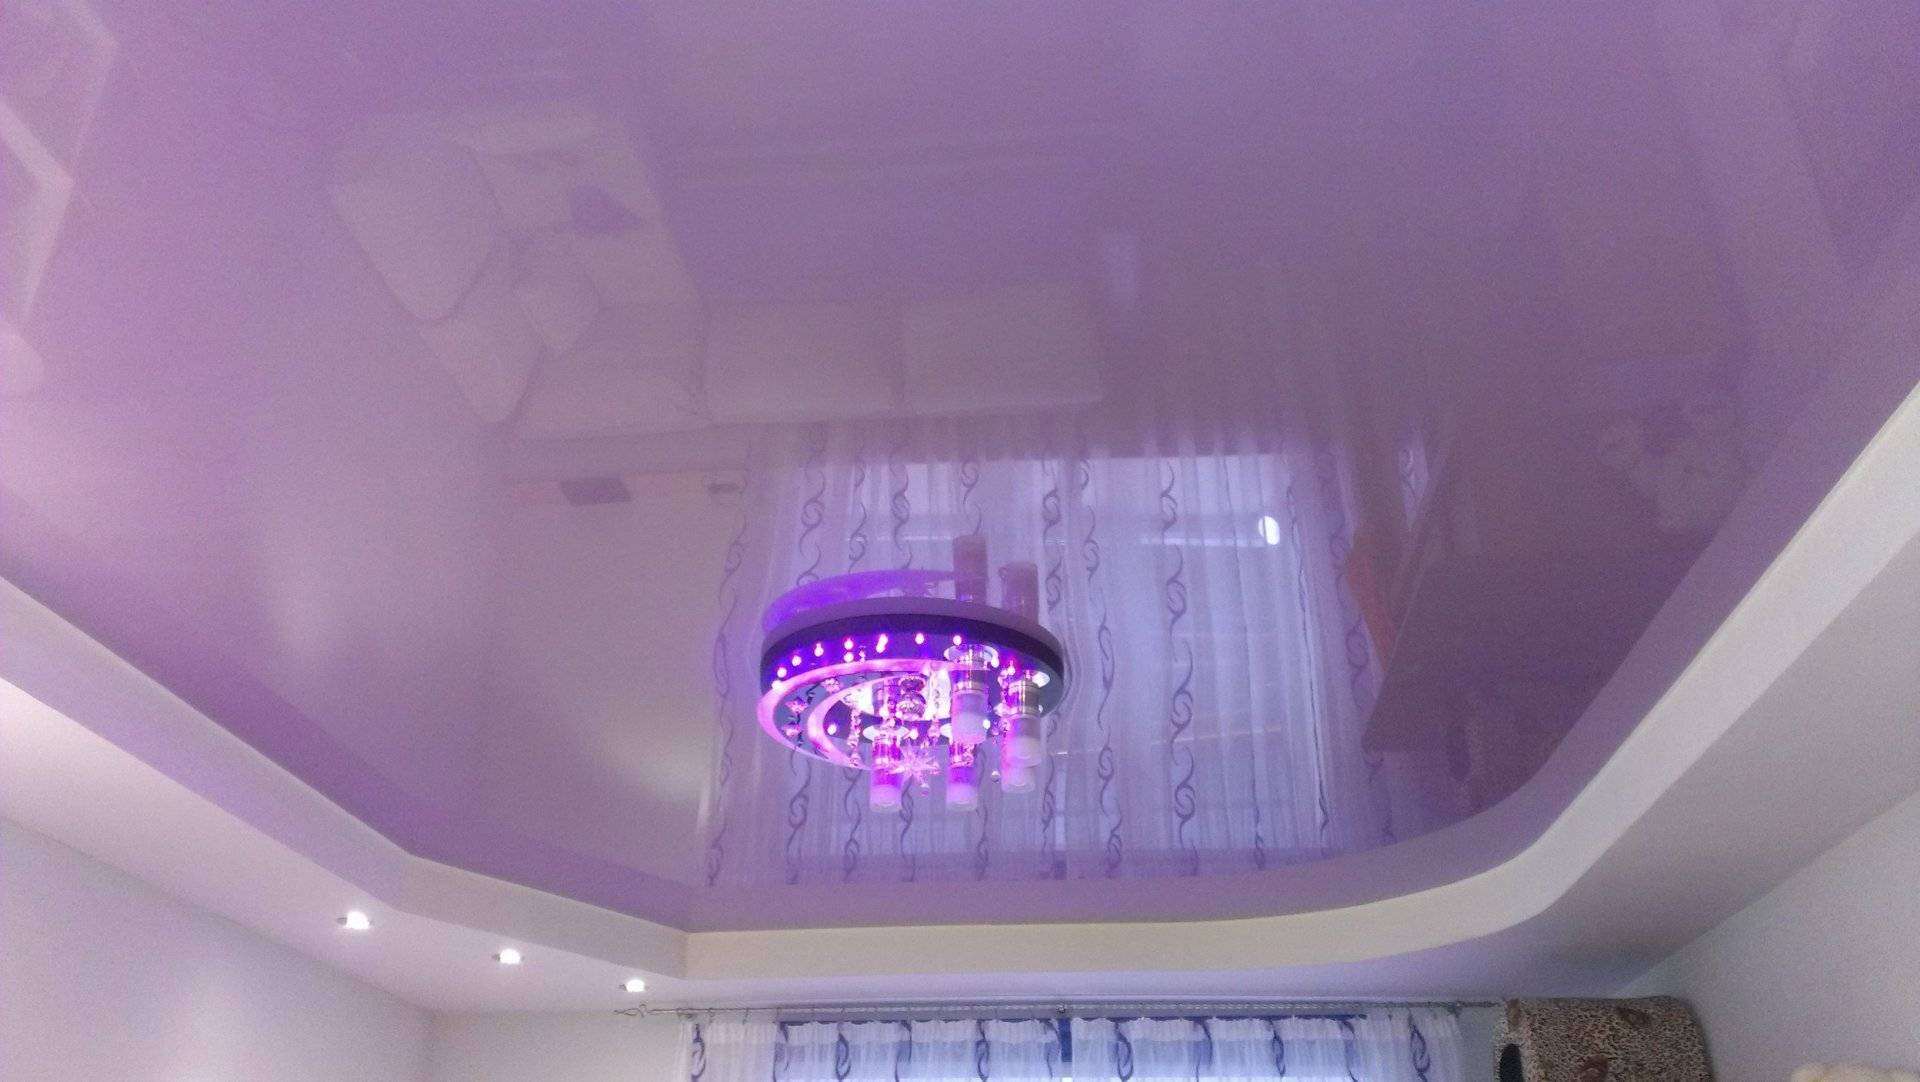 Фиолетовый натяжной потолок: с чем сочетается, идеи интерьера